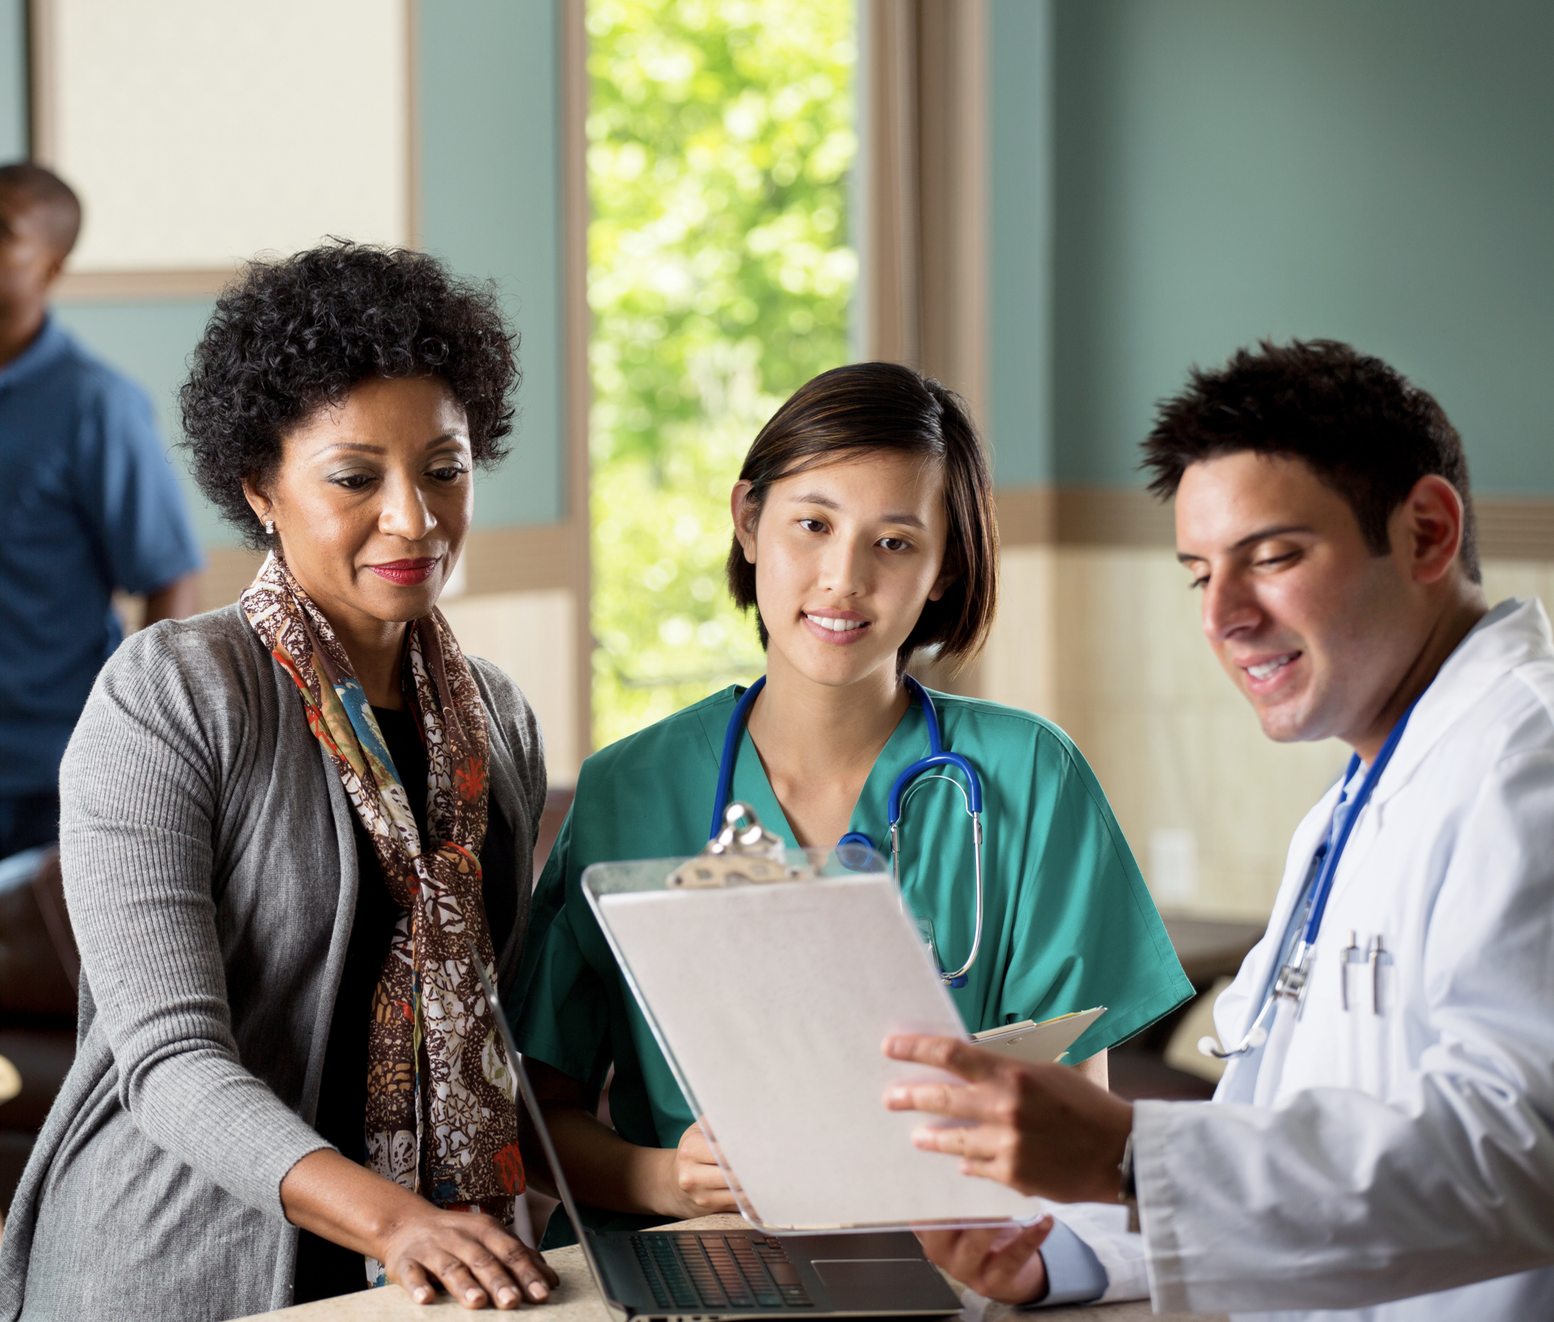 Three medical professionals examine a clipboard